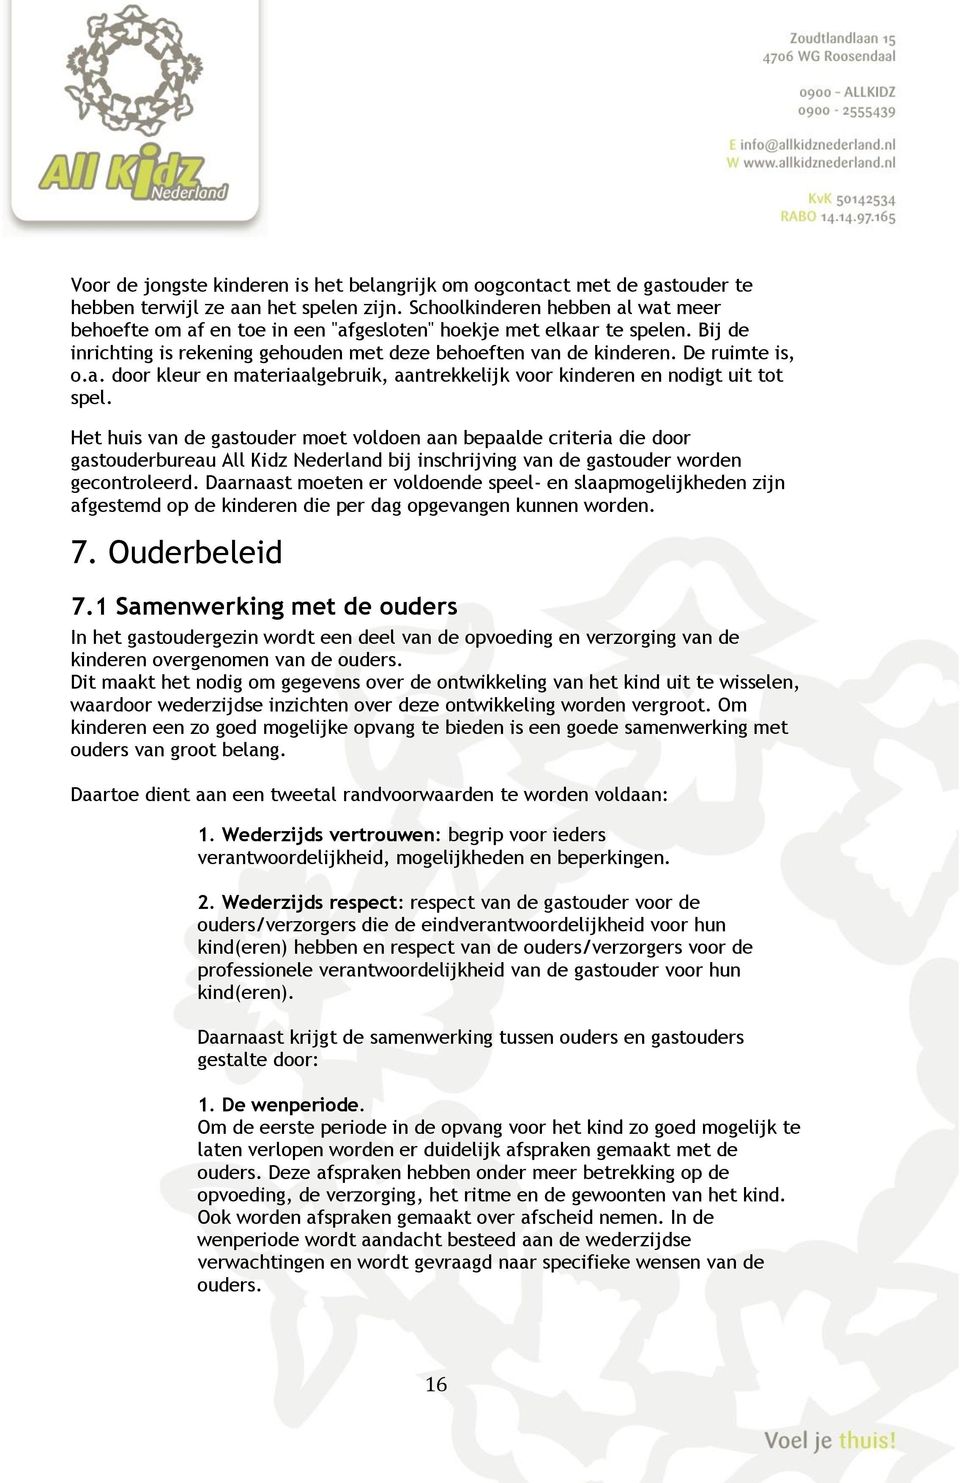 Het huis van de gastouder moet voldoen aan bepaalde criteria die door gastouderbureau All Kidz Nederland bij inschrijving van de gastouder worden gecontroleerd.